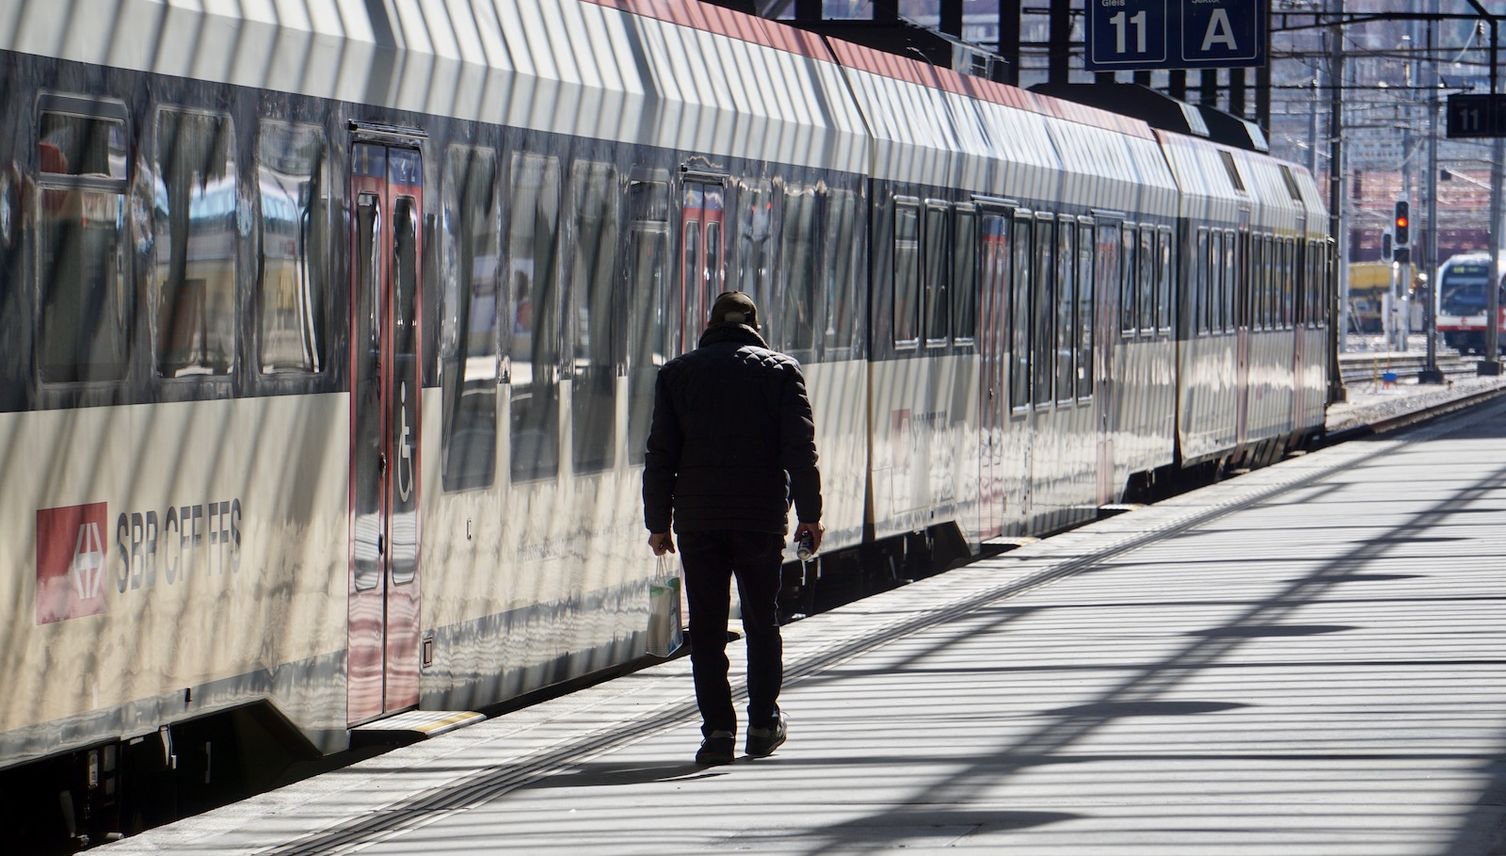 SBB streichen mehr Billettautomaten am Bahnhof Luzern